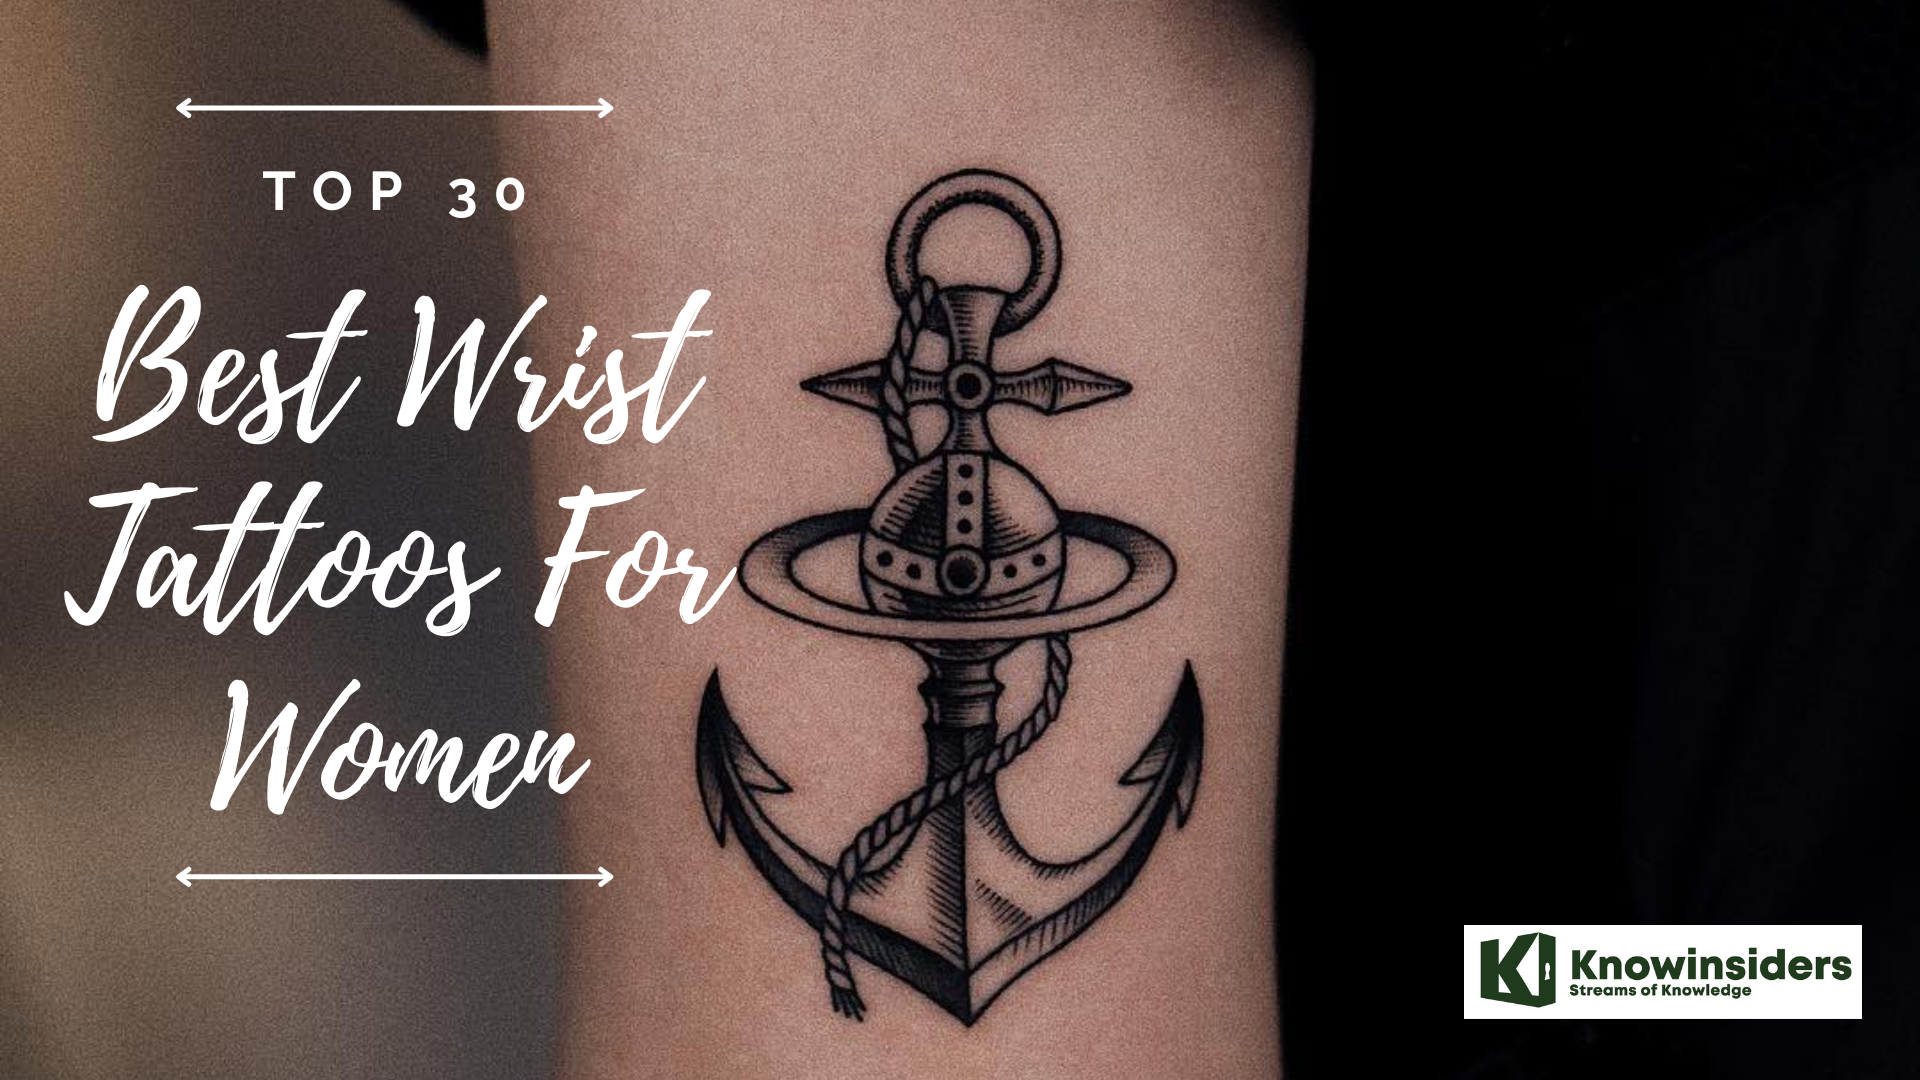 Top 30 best wrist tattoos for women